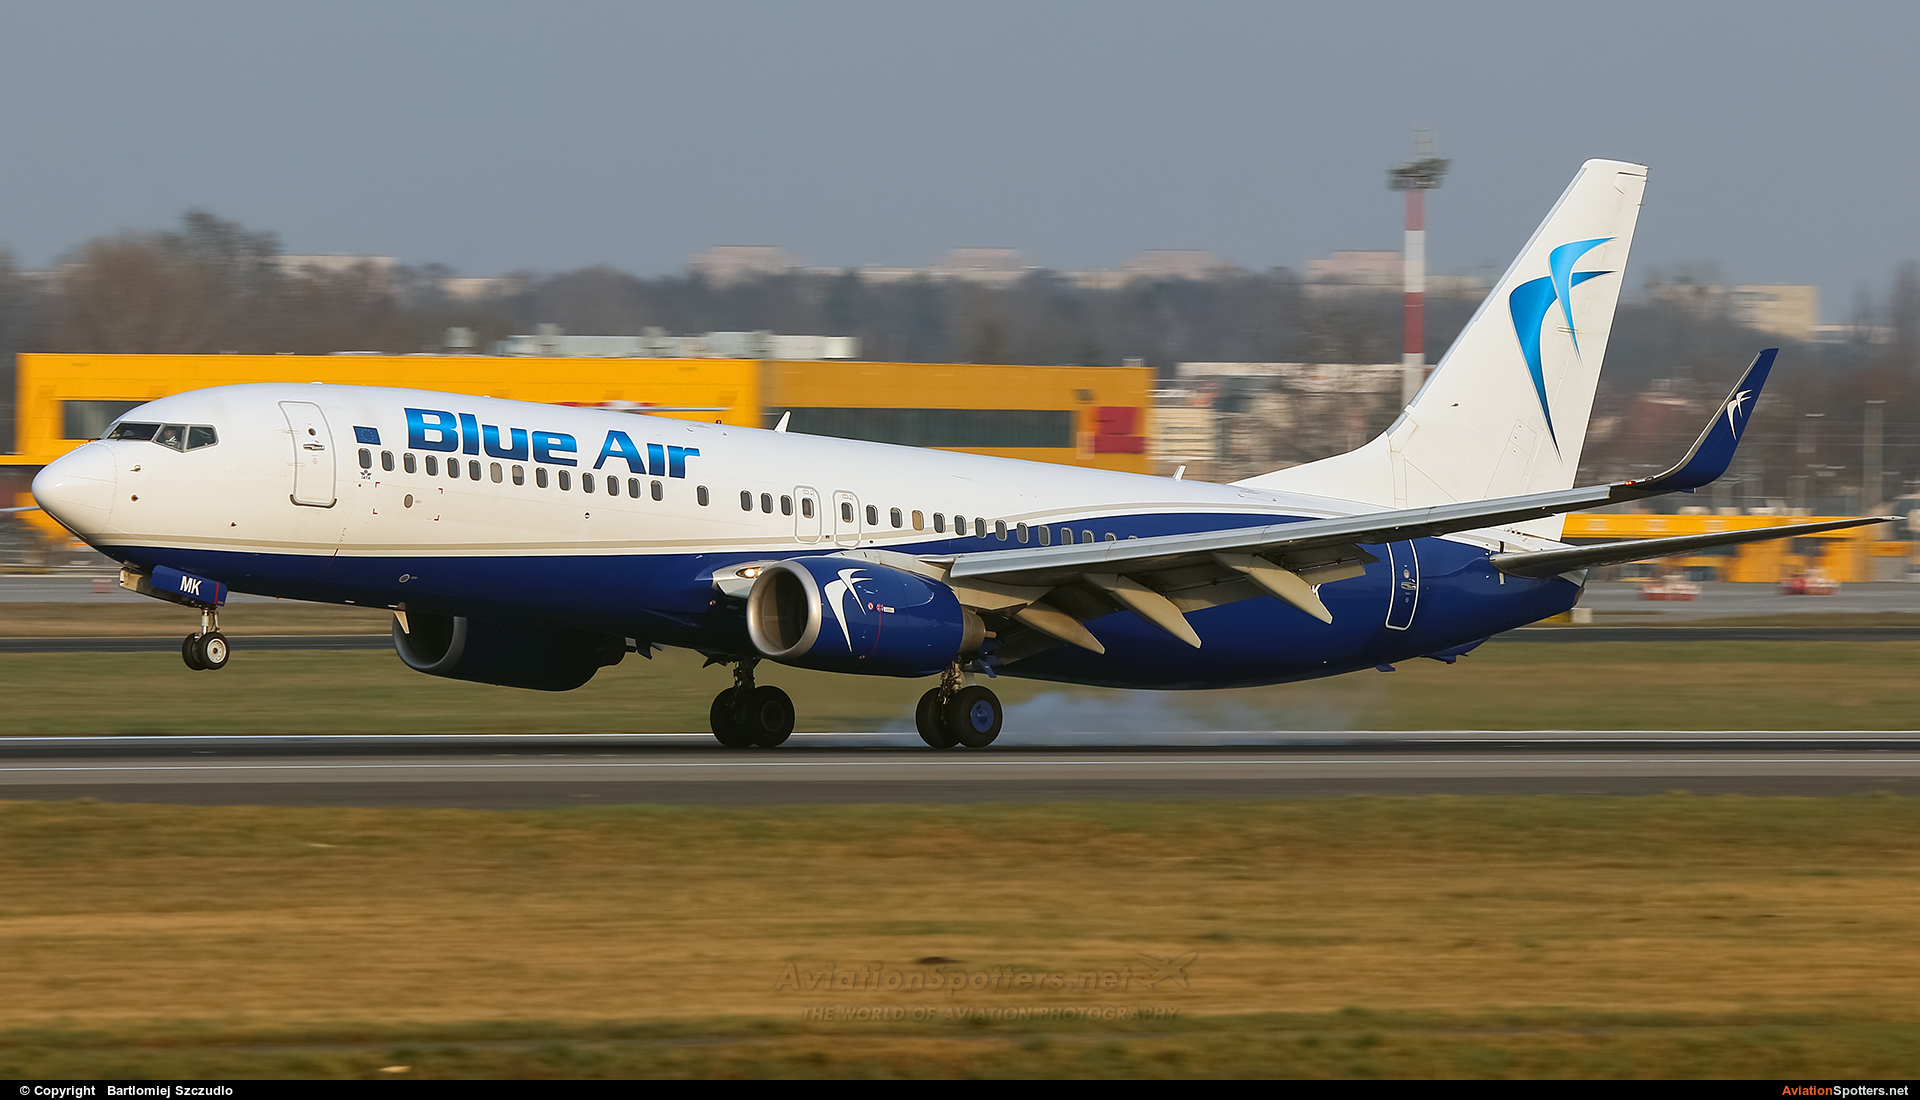 Blue Air  -  737-800  (YR-BMK) By Bartlomiej Szczudlo  (BartekSzczudlo)